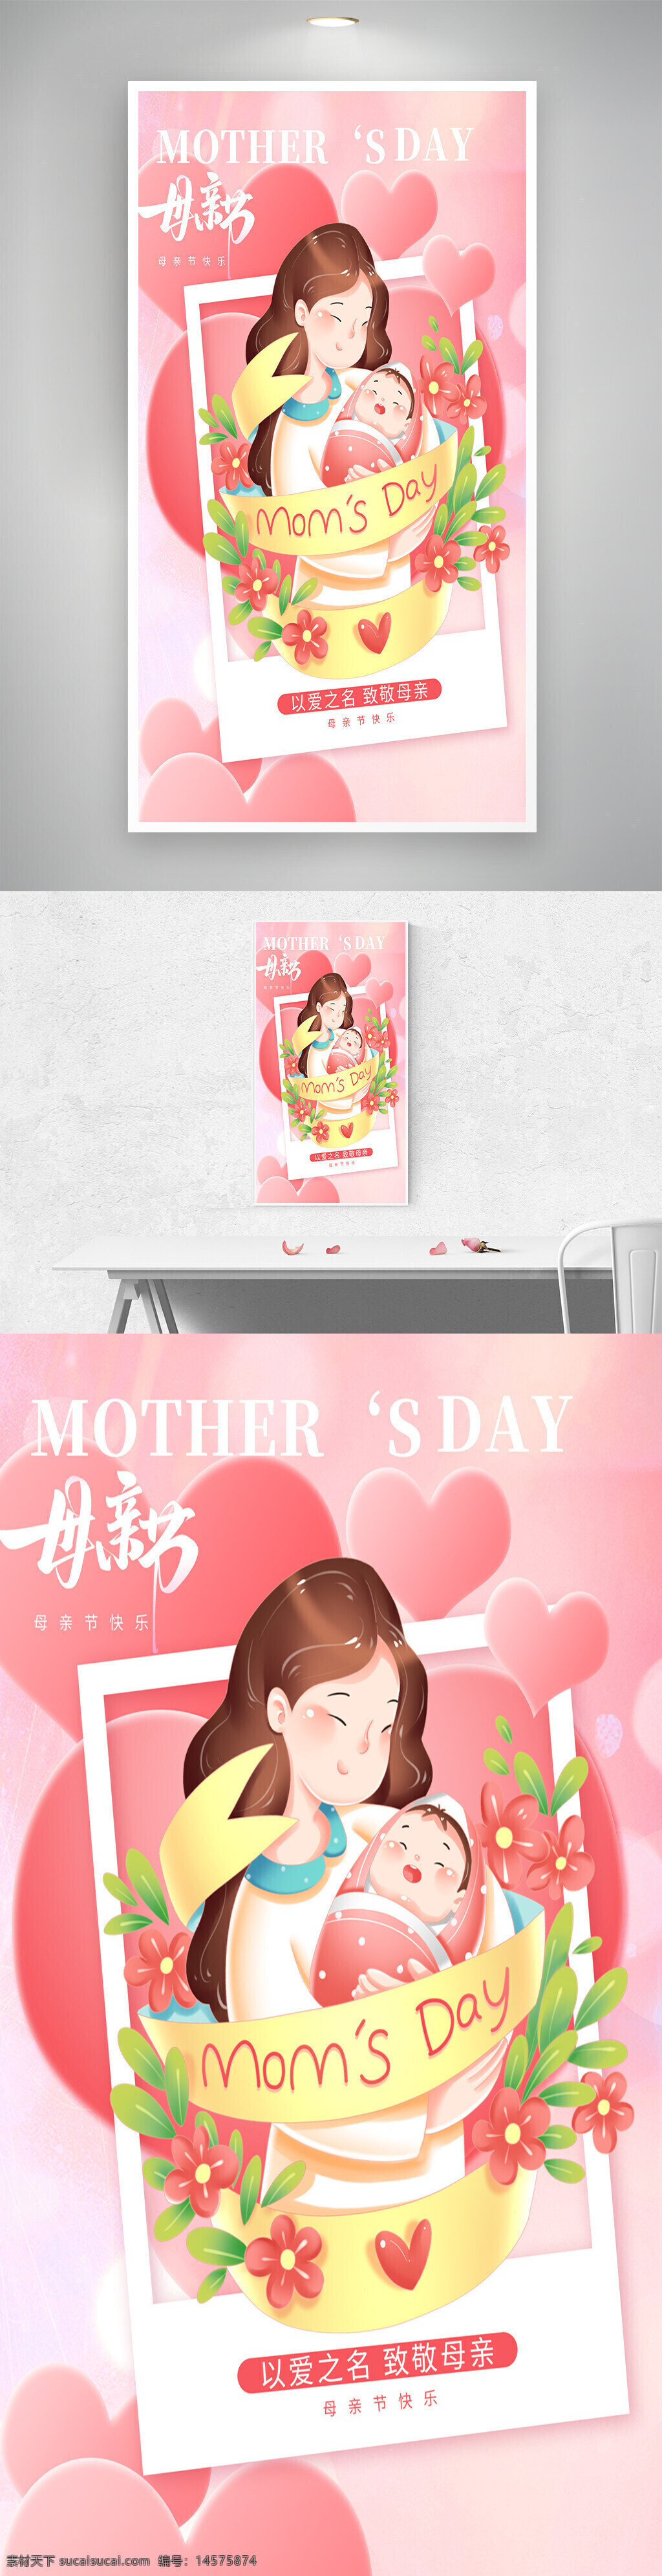 母亲节促销 母亲节 母亲节展板 母亲节海报 感恩母亲节 妈妈节日快乐 母亲节模板 母亲节活动 母亲节设计 母亲节宣传单